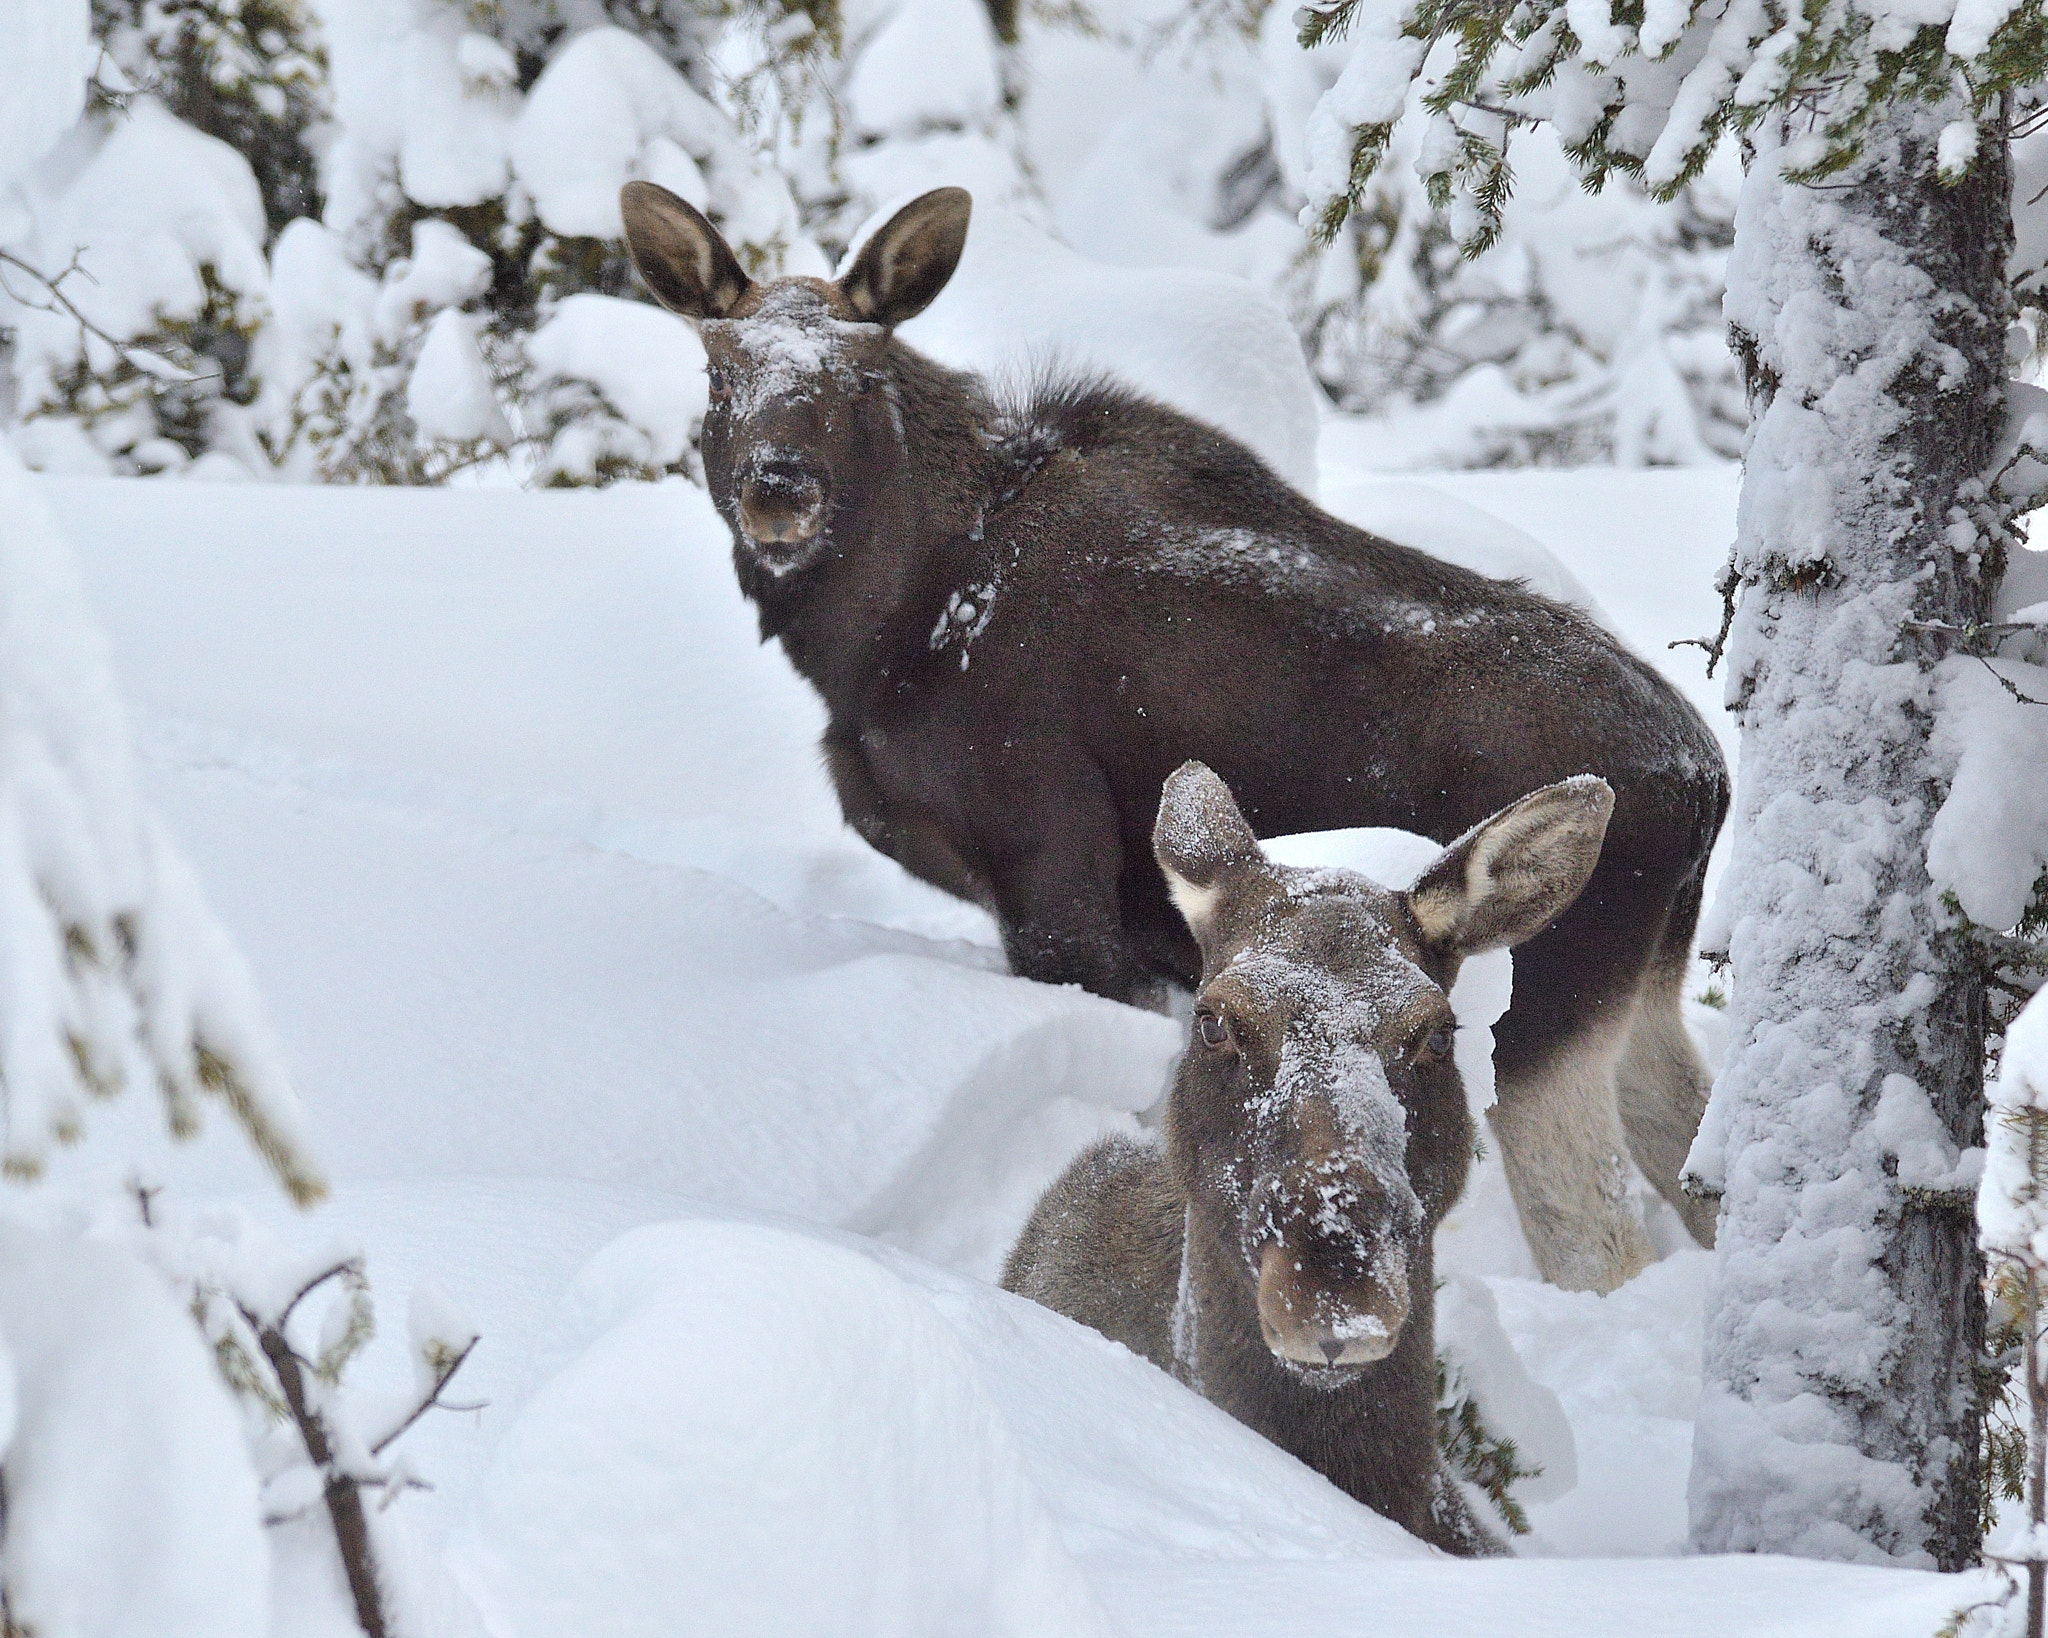 Nikon D5100 + Tamron SP AF 70-200mm F2.8 Di LD (IF) MACRO sample photo. Moose in deep snow photography